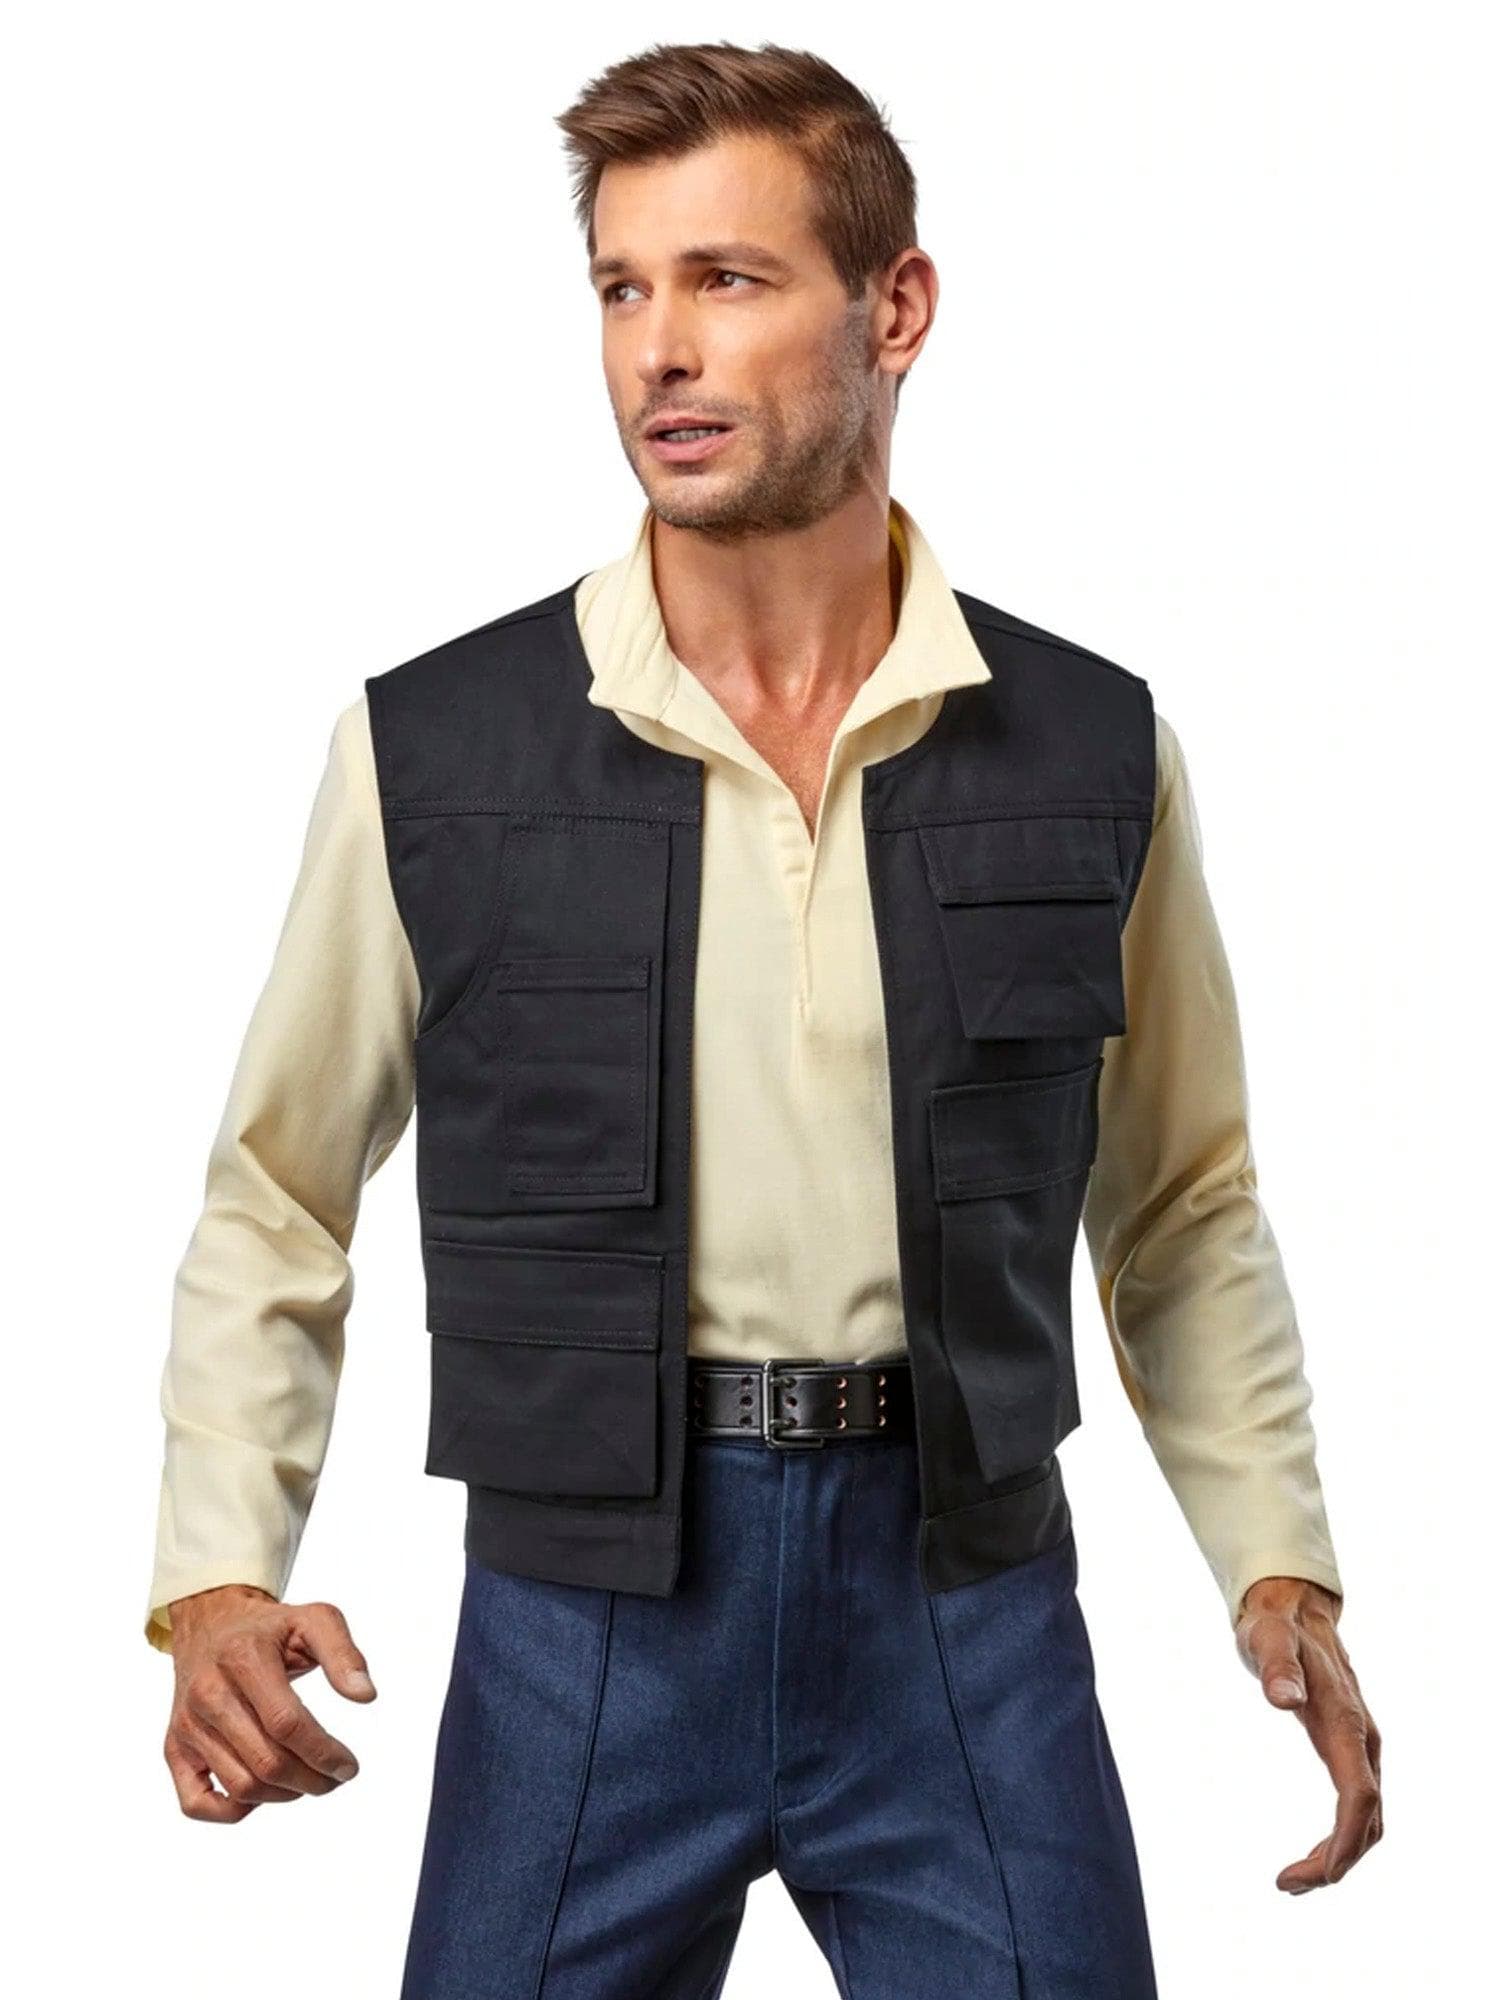 Denuo Novo Star Wars Han Solo Signature Line Vest - costumes.com